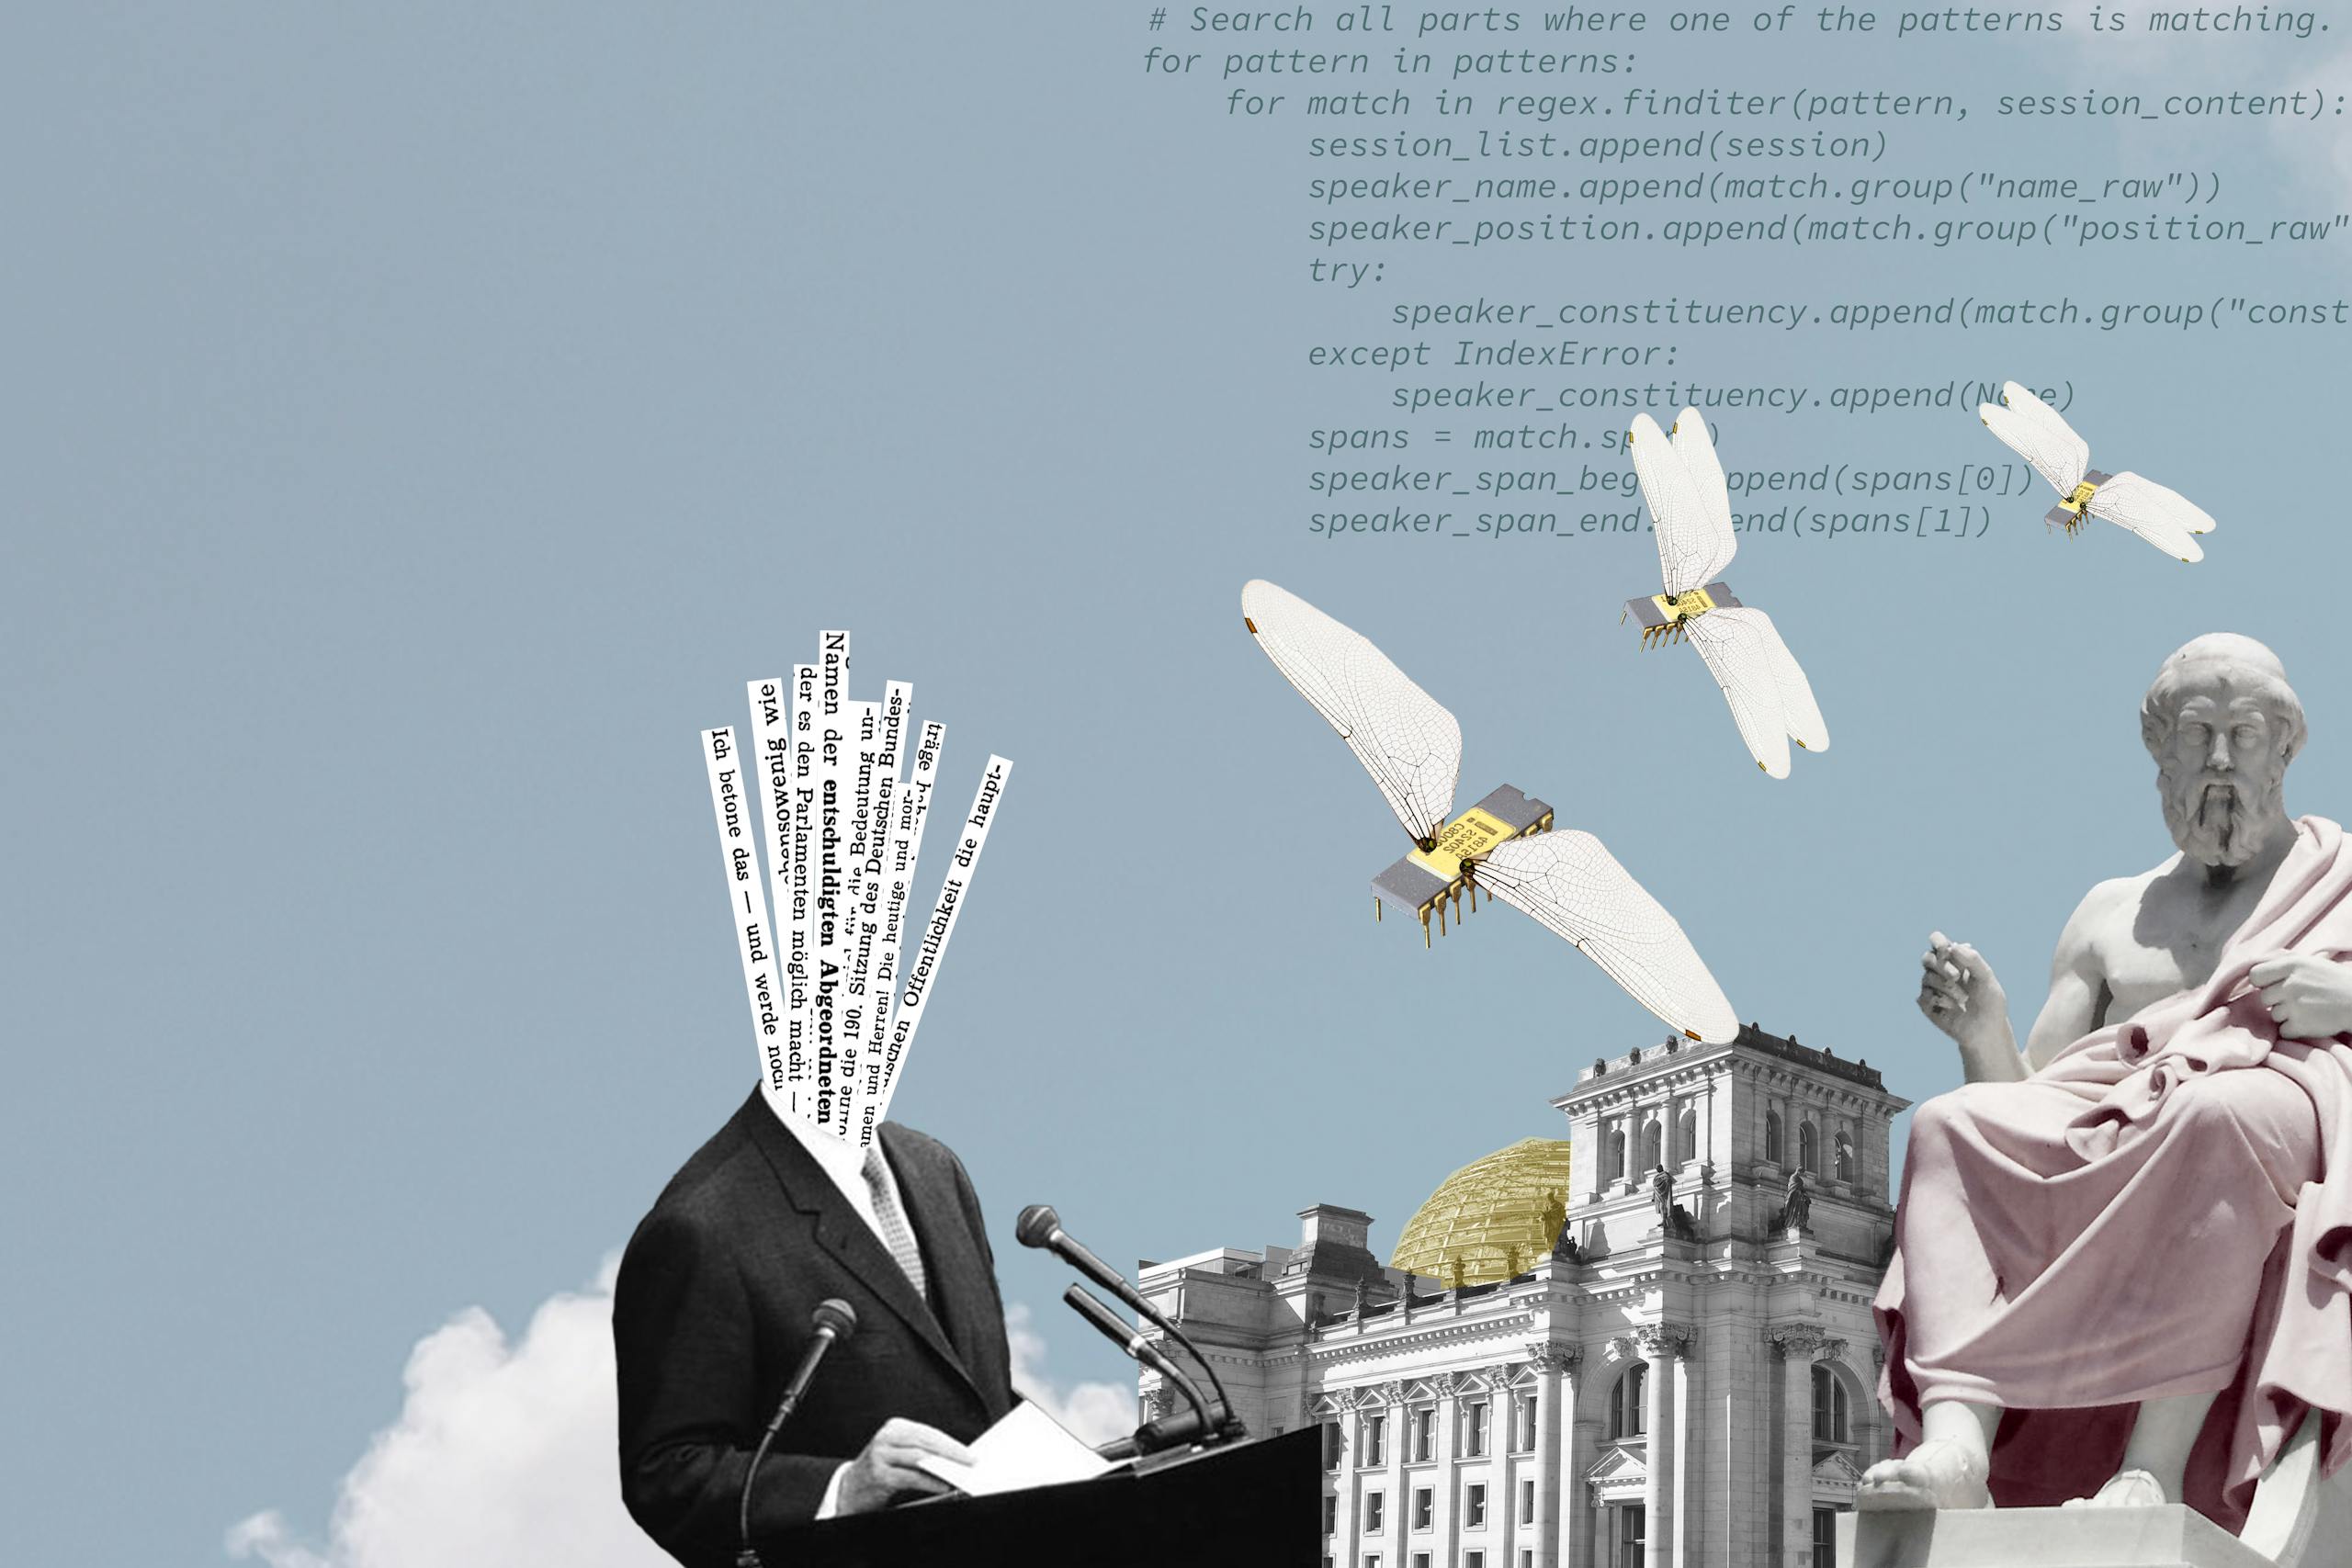 Fotokollage mit Programmiercode, Bundestag, Antiken Statuen und einer Person, die eine Rede hält